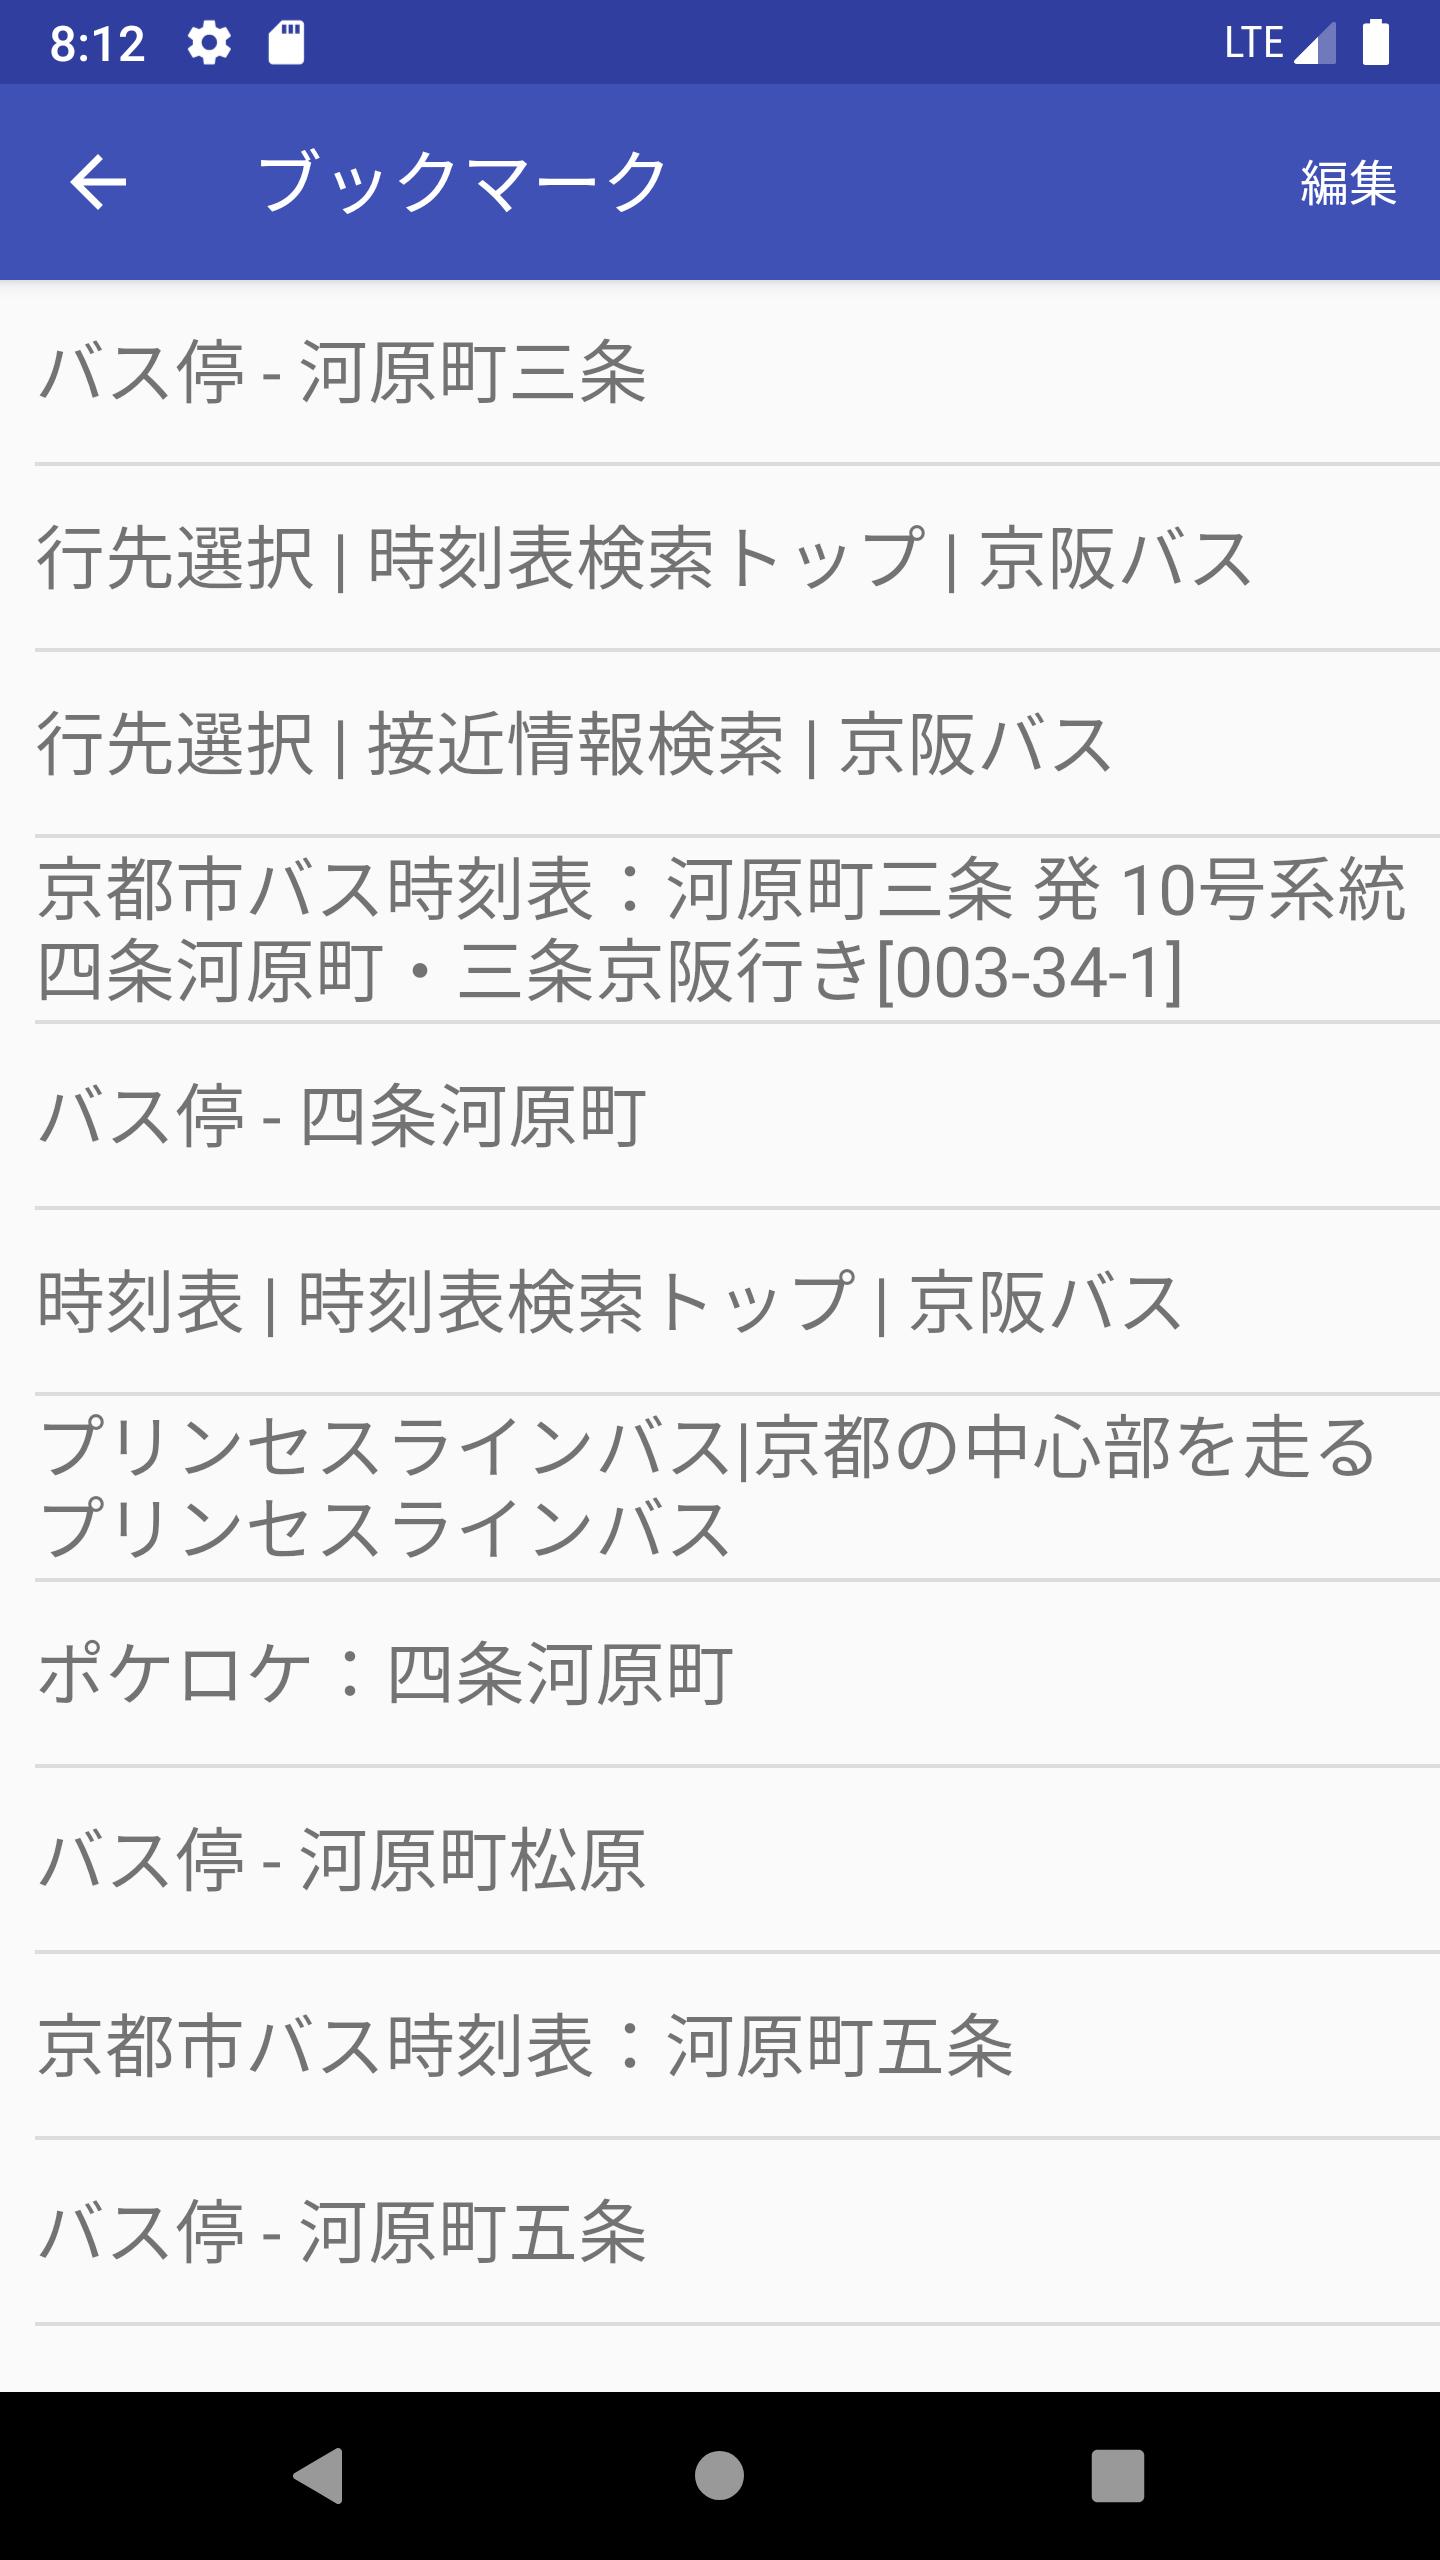 京都 市 市バス 時刻 表 七条河原町のバス時刻表とバス停地図 京都市交通局 路線バス情報 Amp Petmd Com